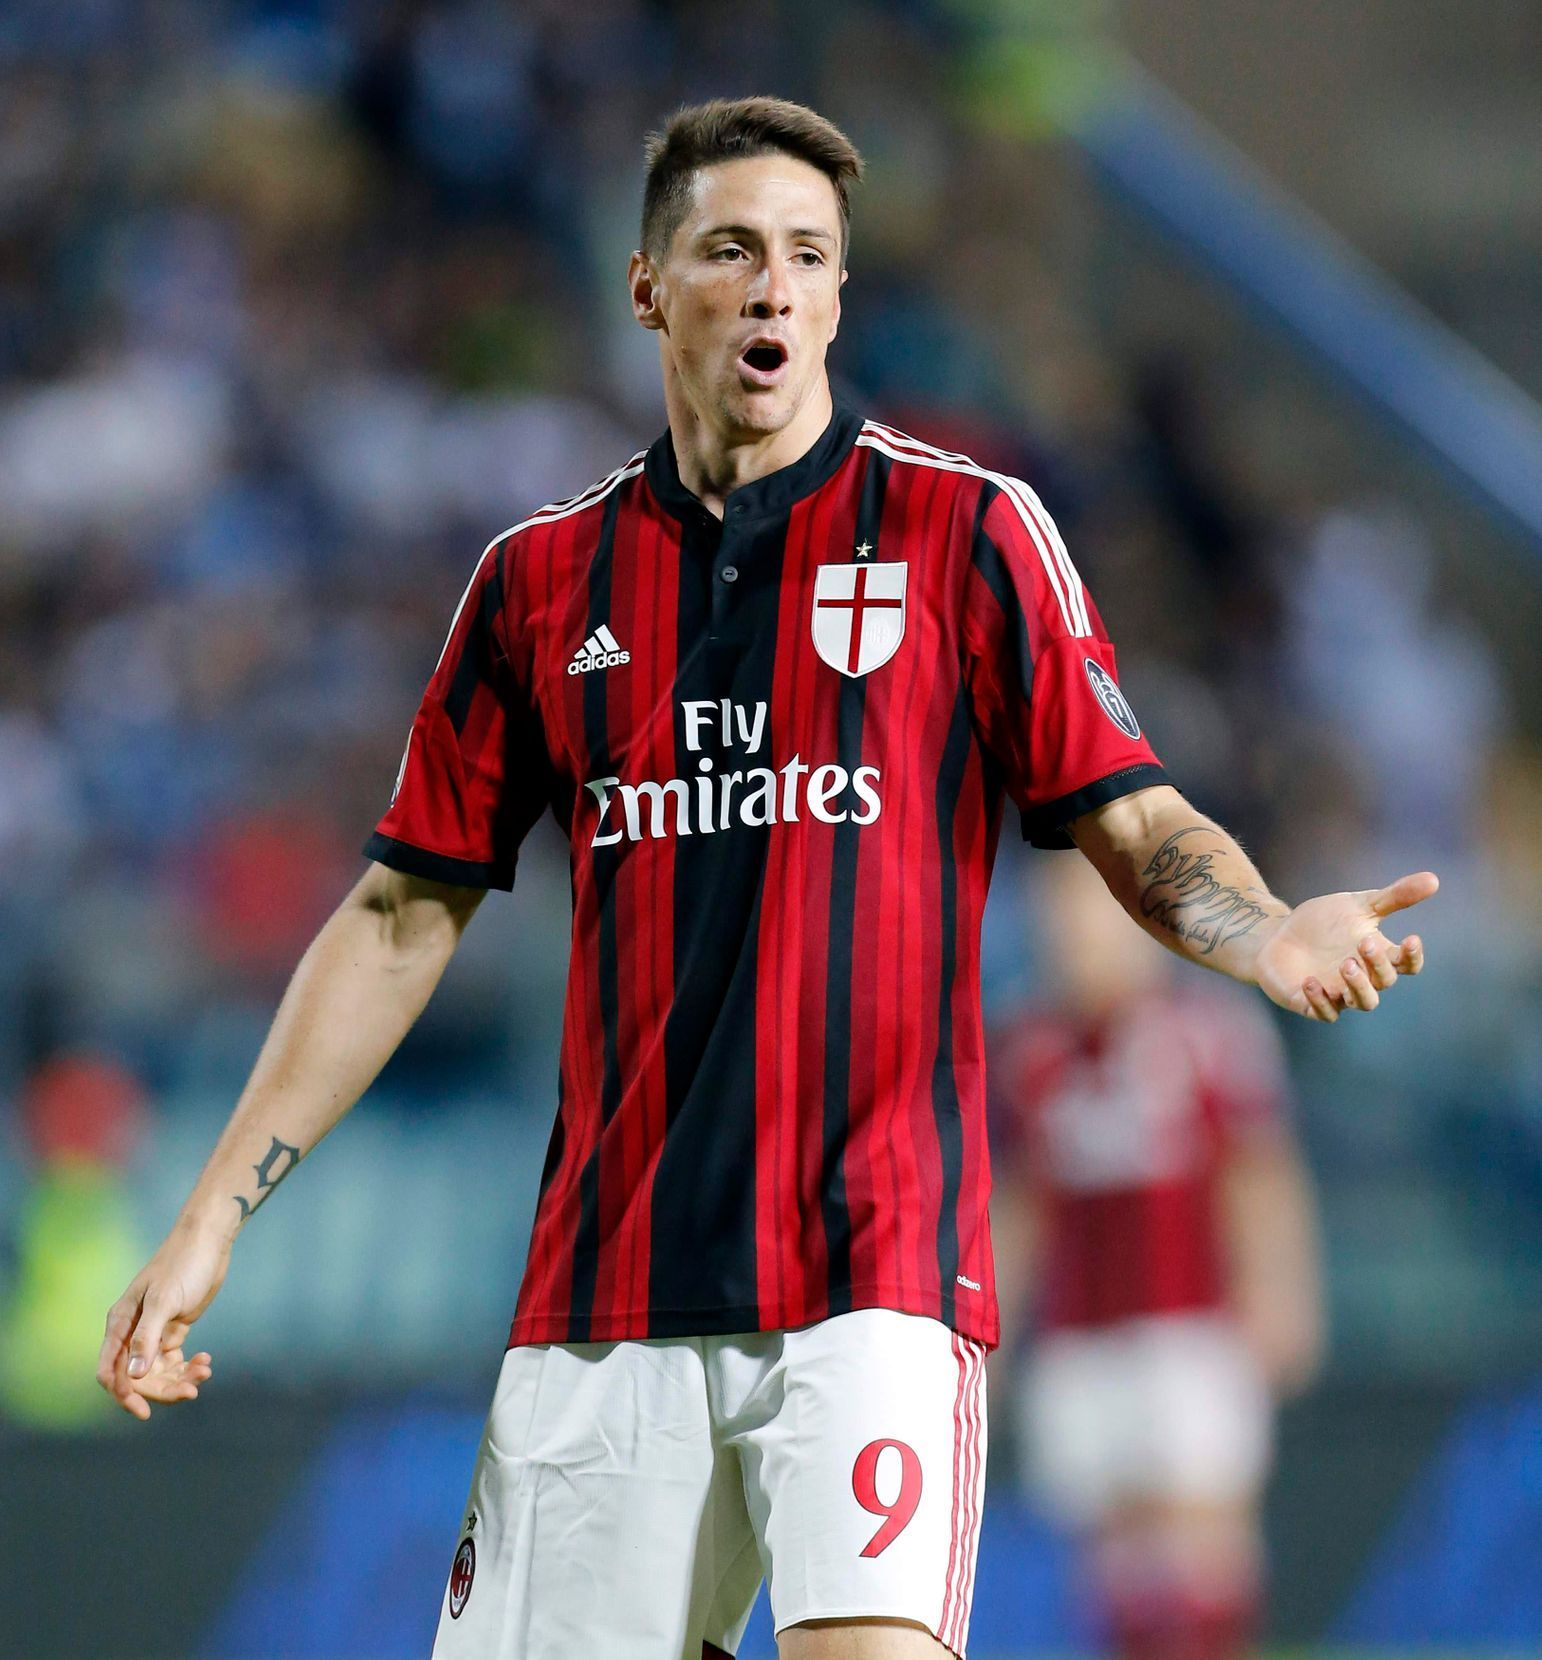 Fernando Torres v dresu AC Milán